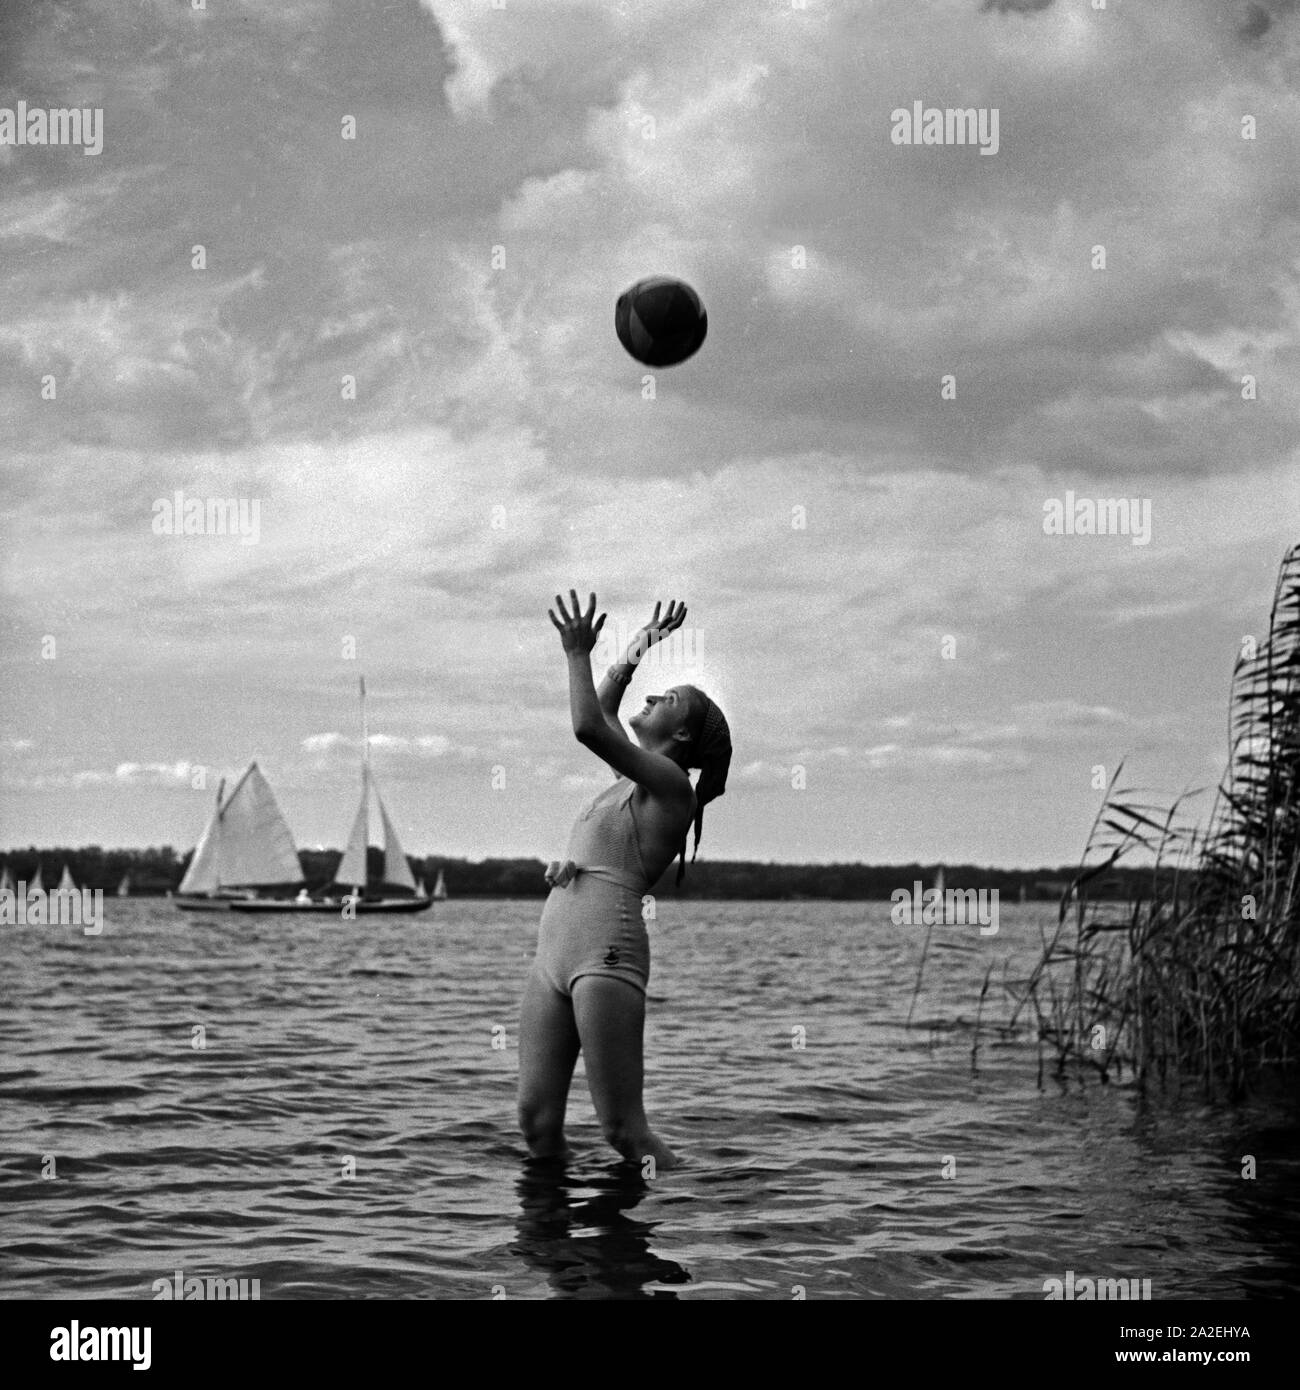 Werbefoto: eine Junge Frau spielt mit einem Wasserball am Strand eines Sees, Deutschland 1930er Jahre. Advertising: a young woman playing waterball on a beach, Germany 1930s. Stock Photo